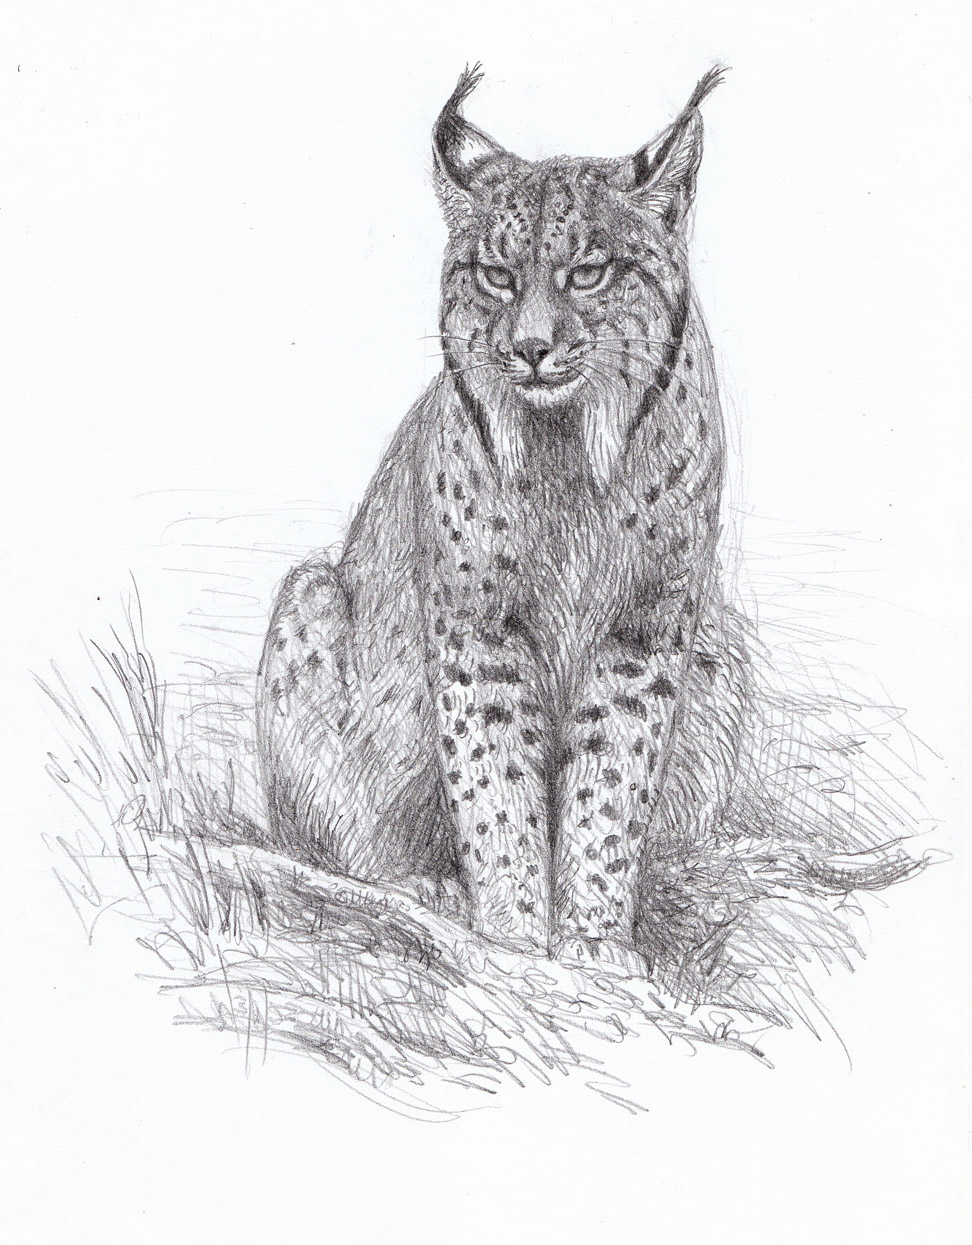 El gato getting familiar with the Iberian Lynx